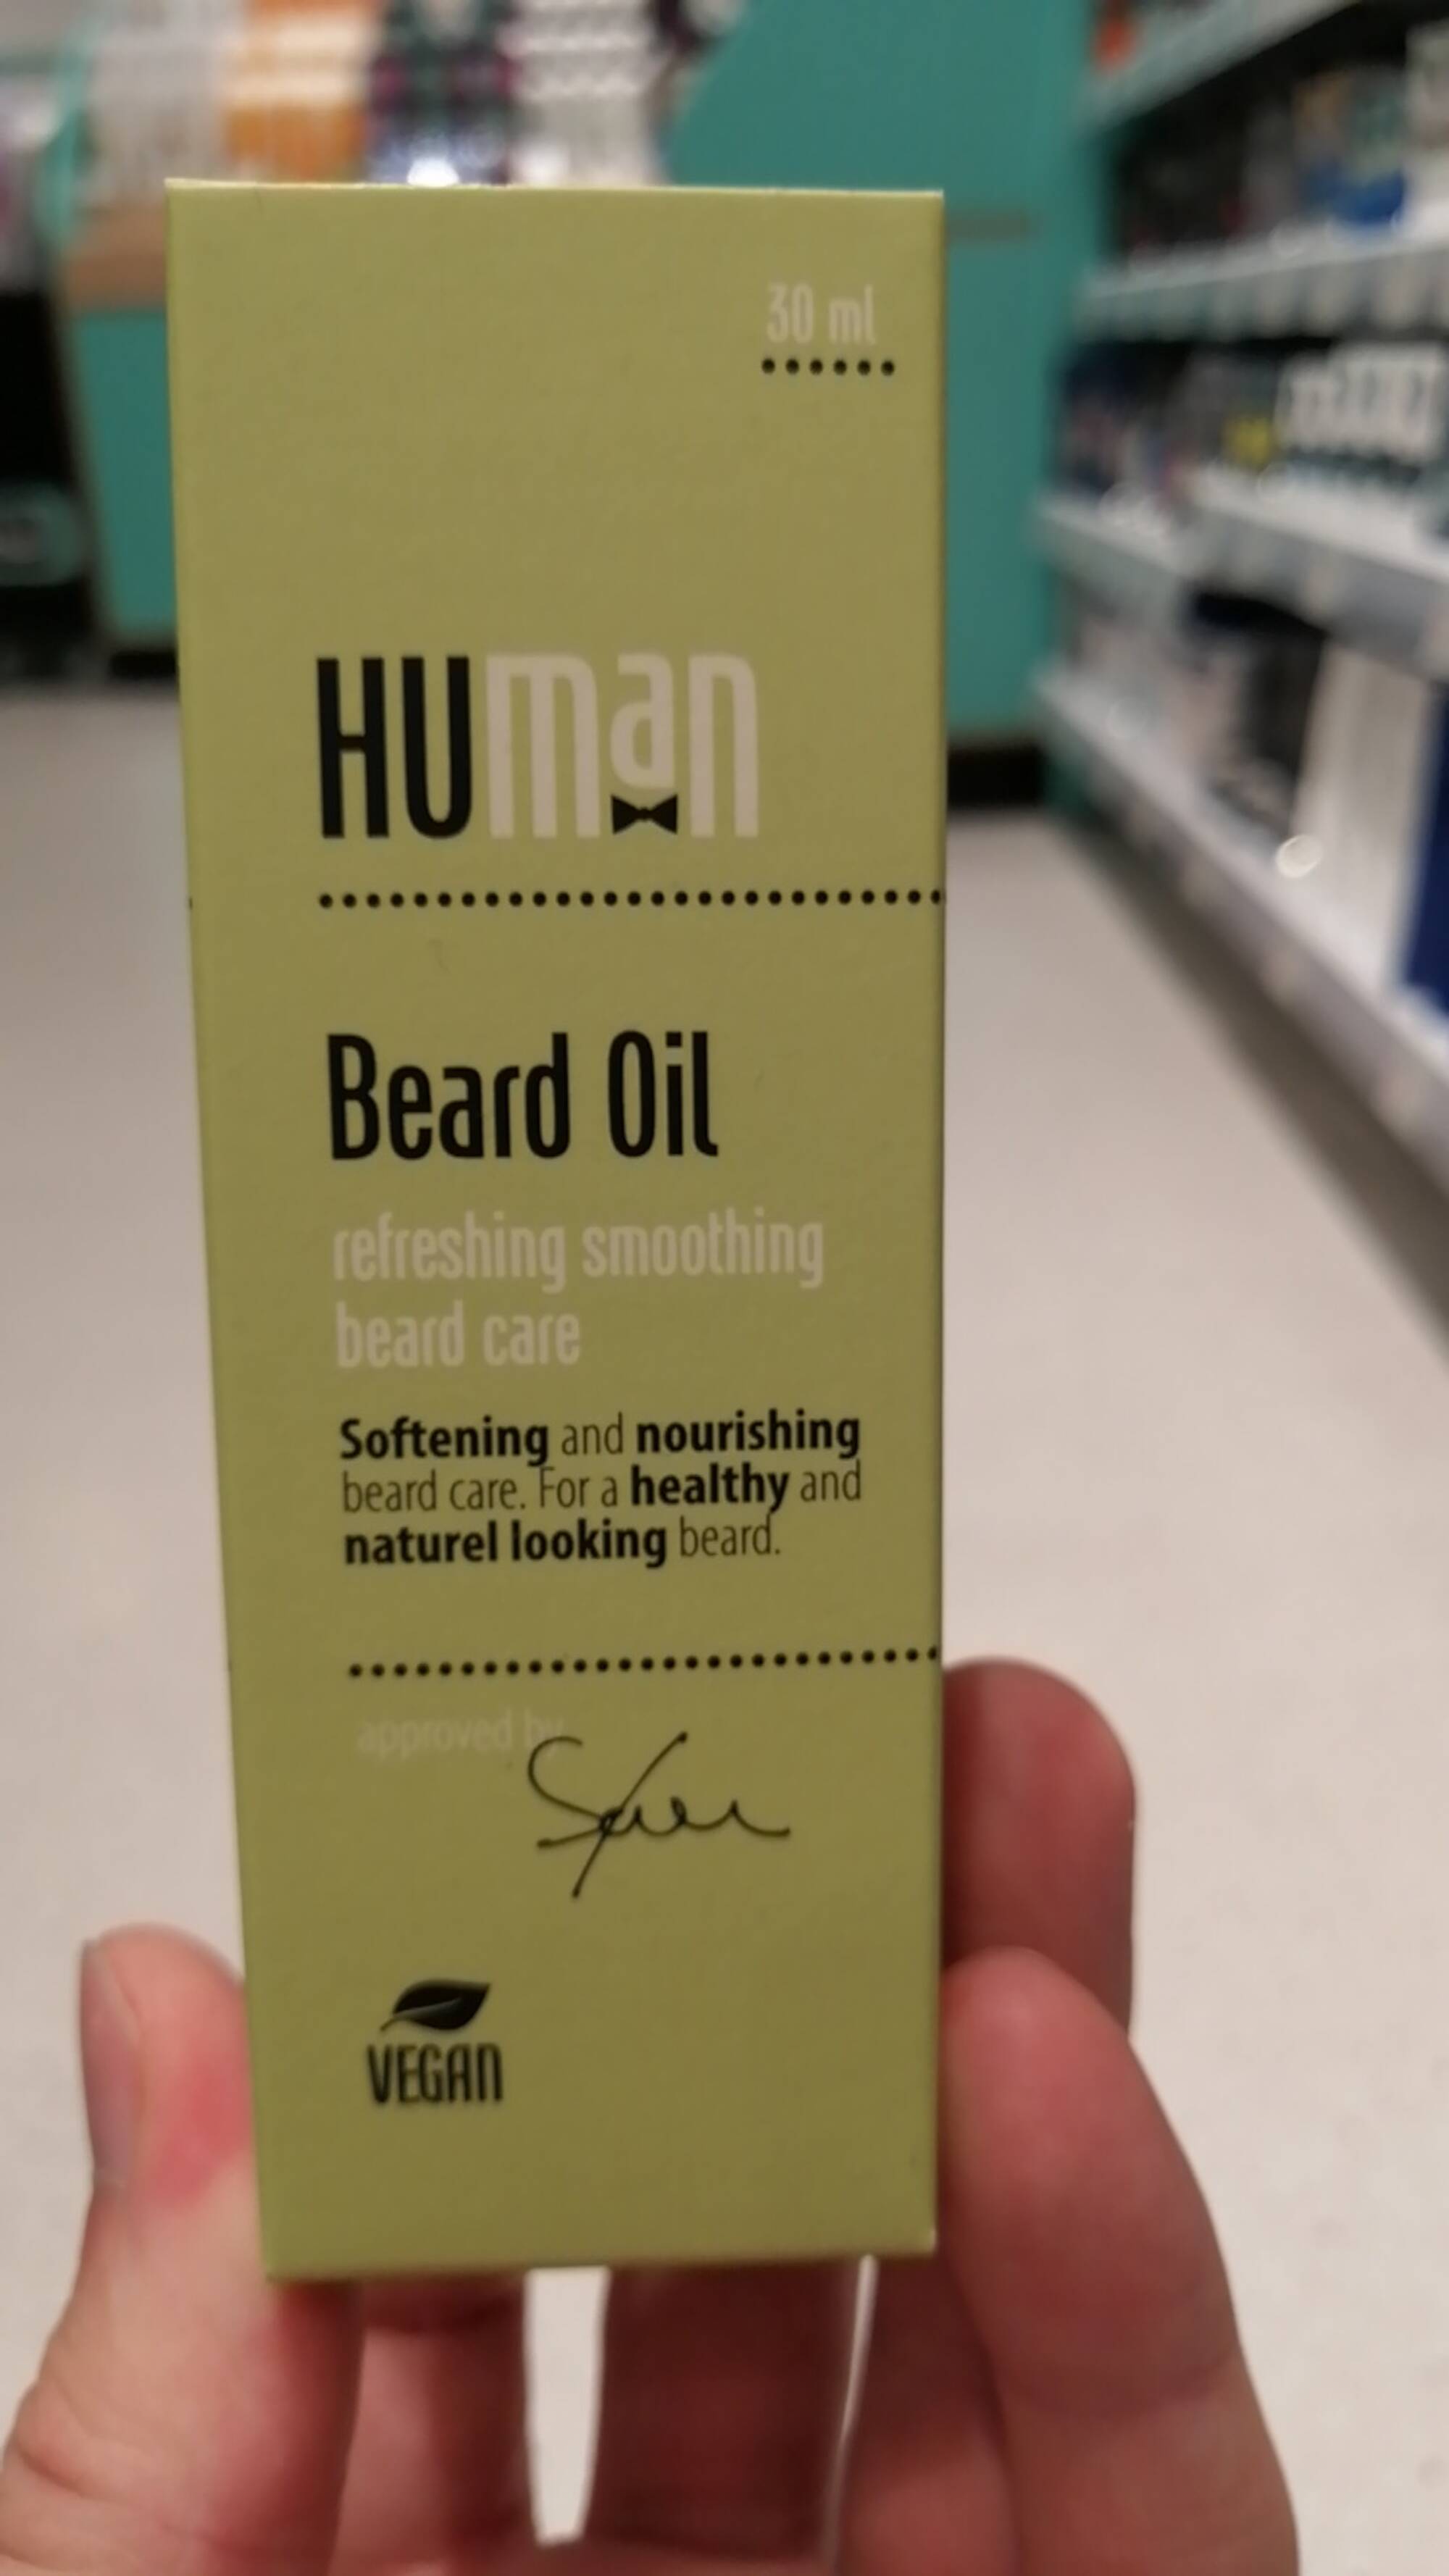 HUMAN - Beard oil - Refreshing smoothing